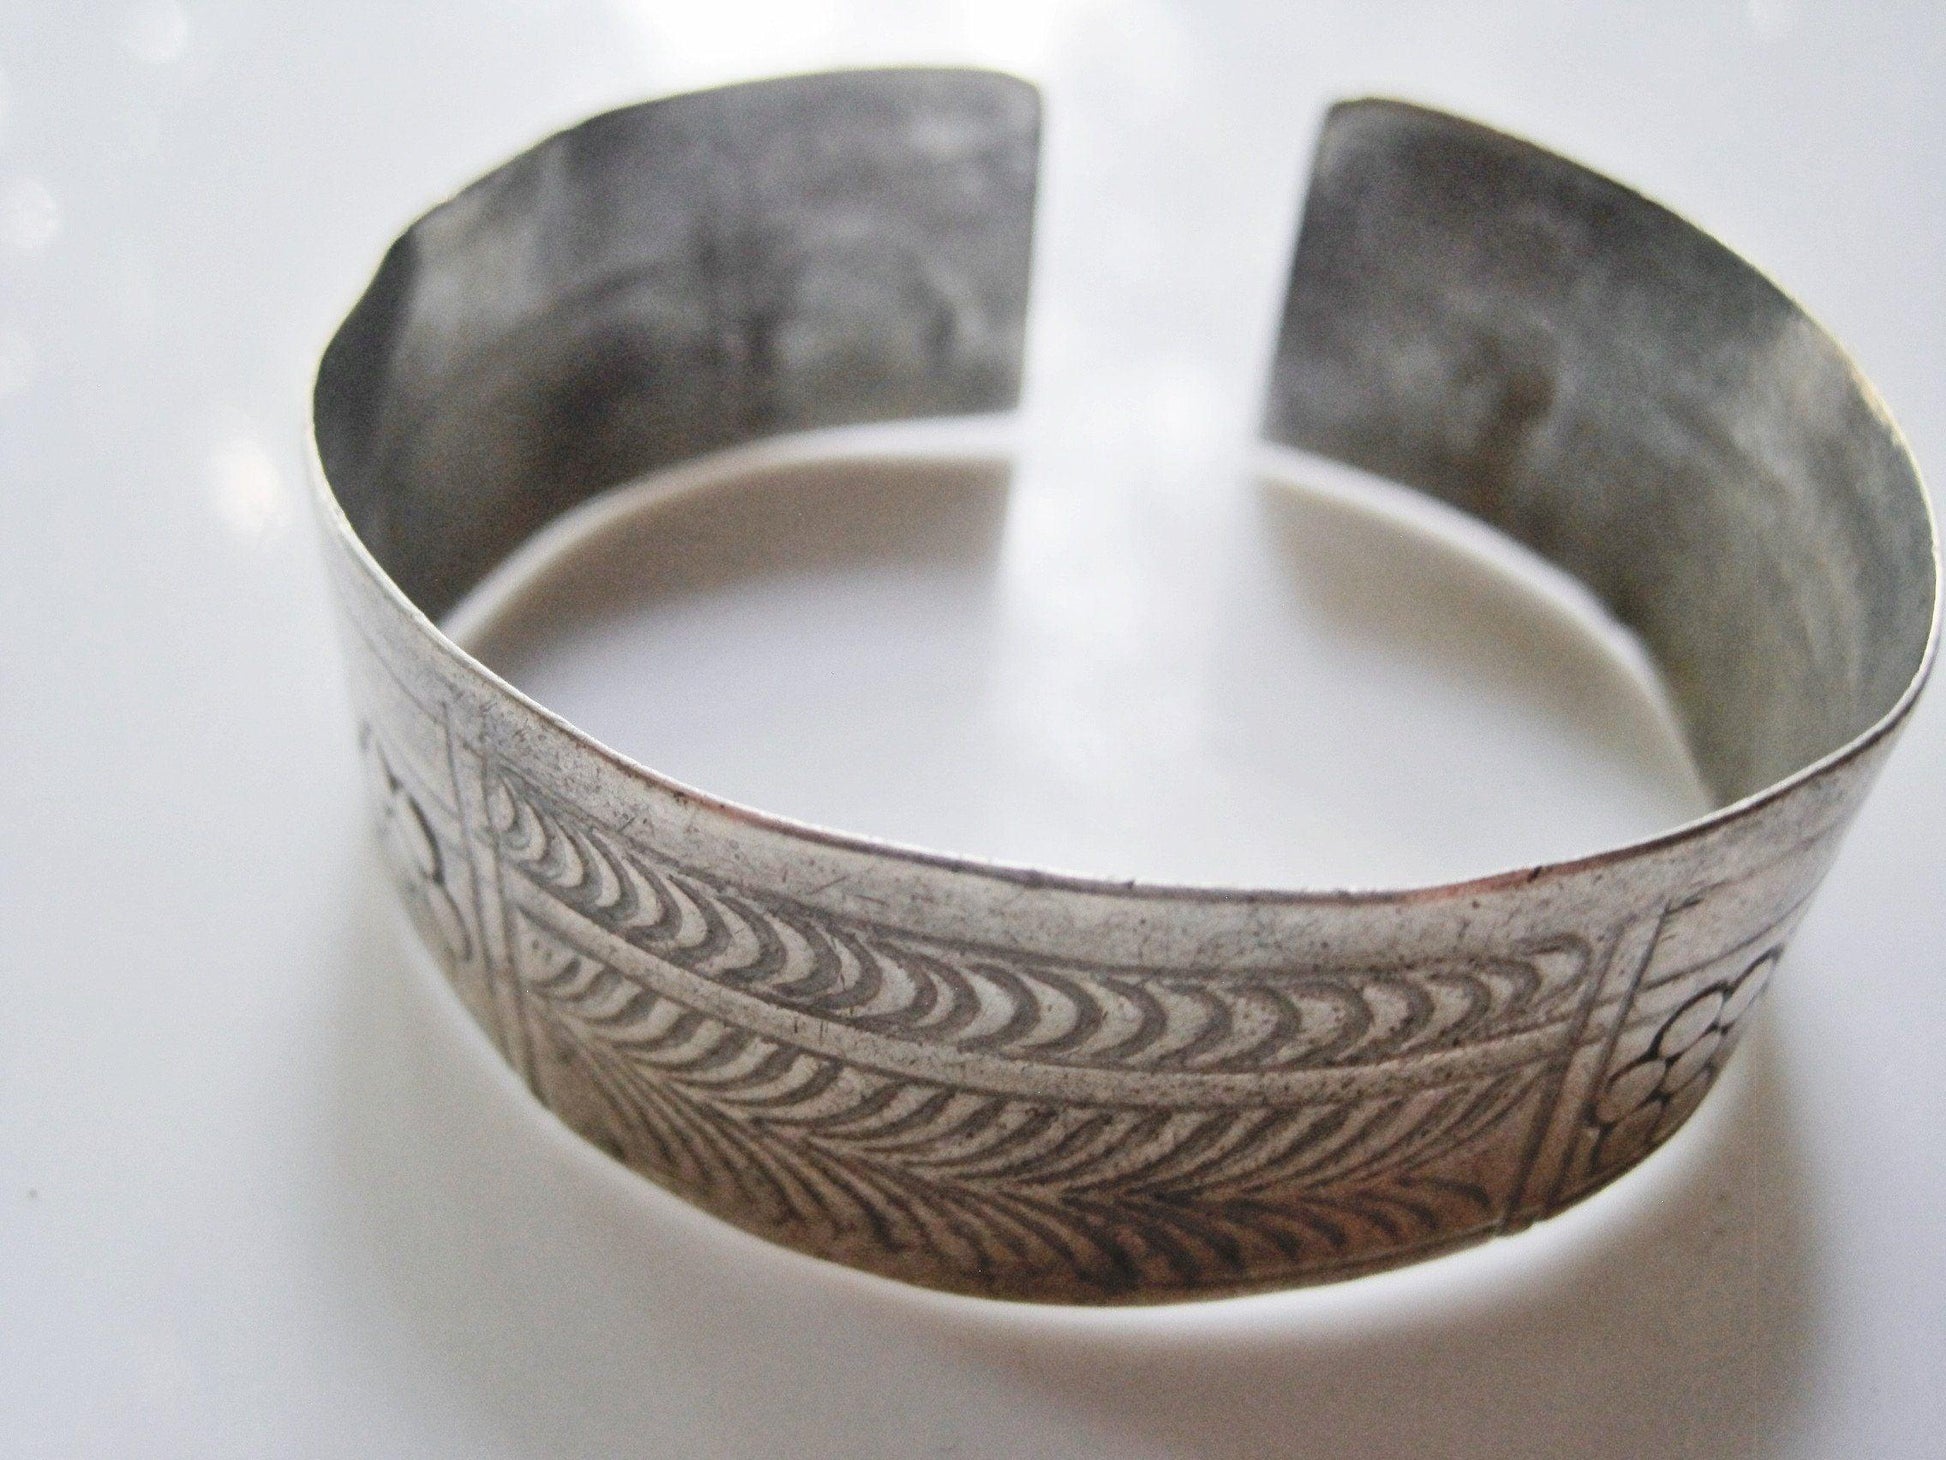 Berber silver cuff